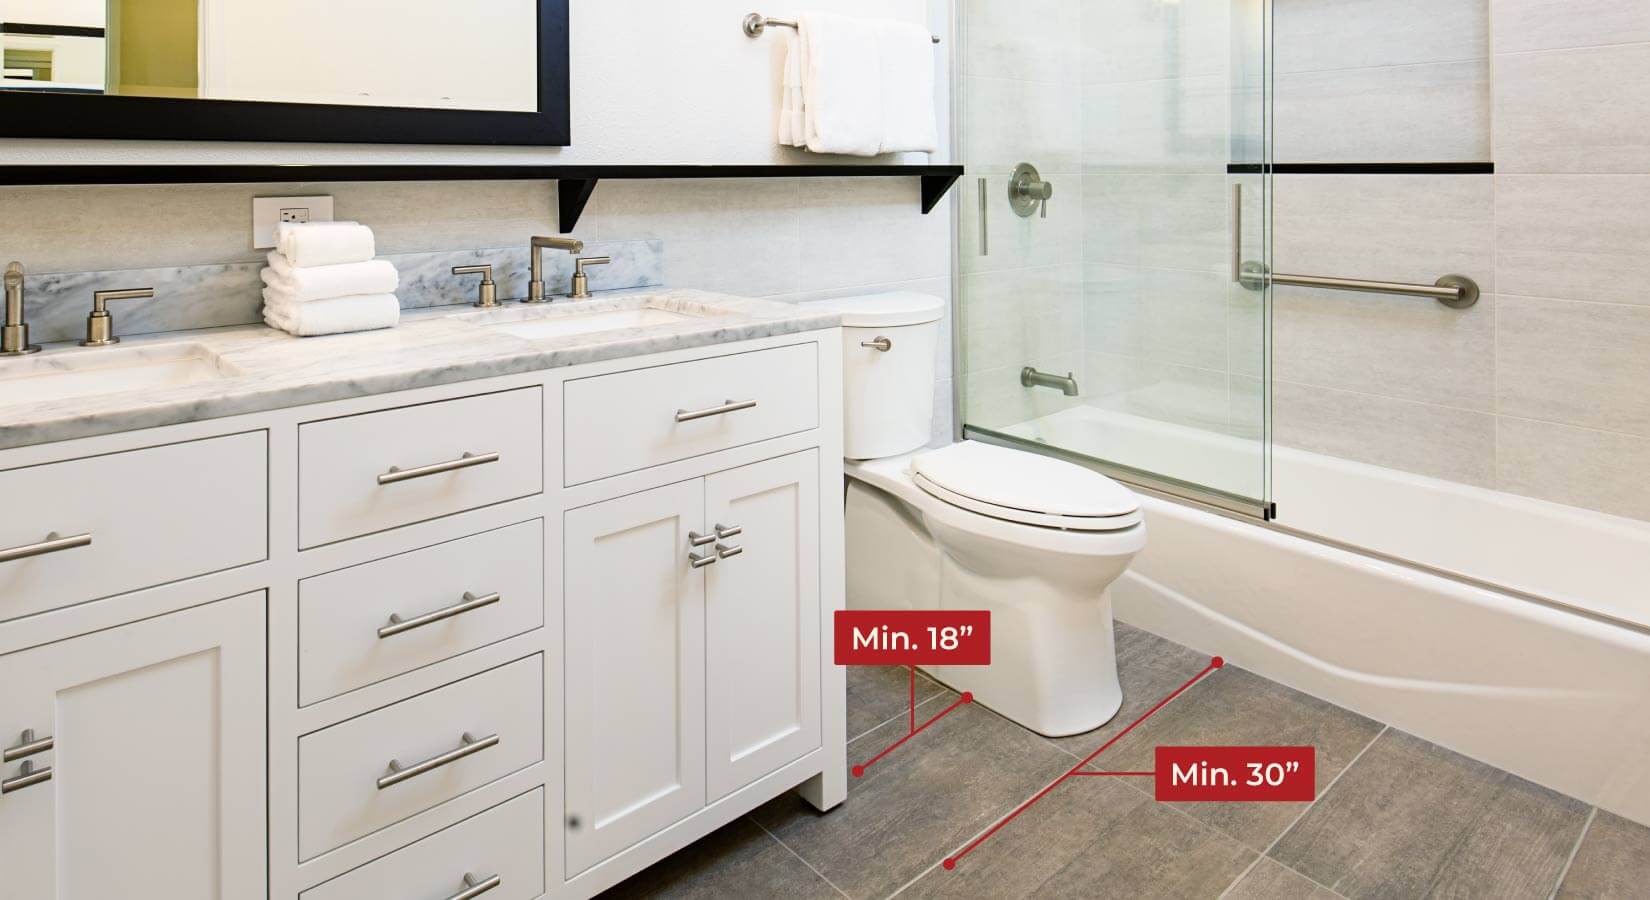 https://cdn.kitchencabinetkings.com/media/siege/bathroom-vanity-sizes/bathroom-vanity-layout.jpg